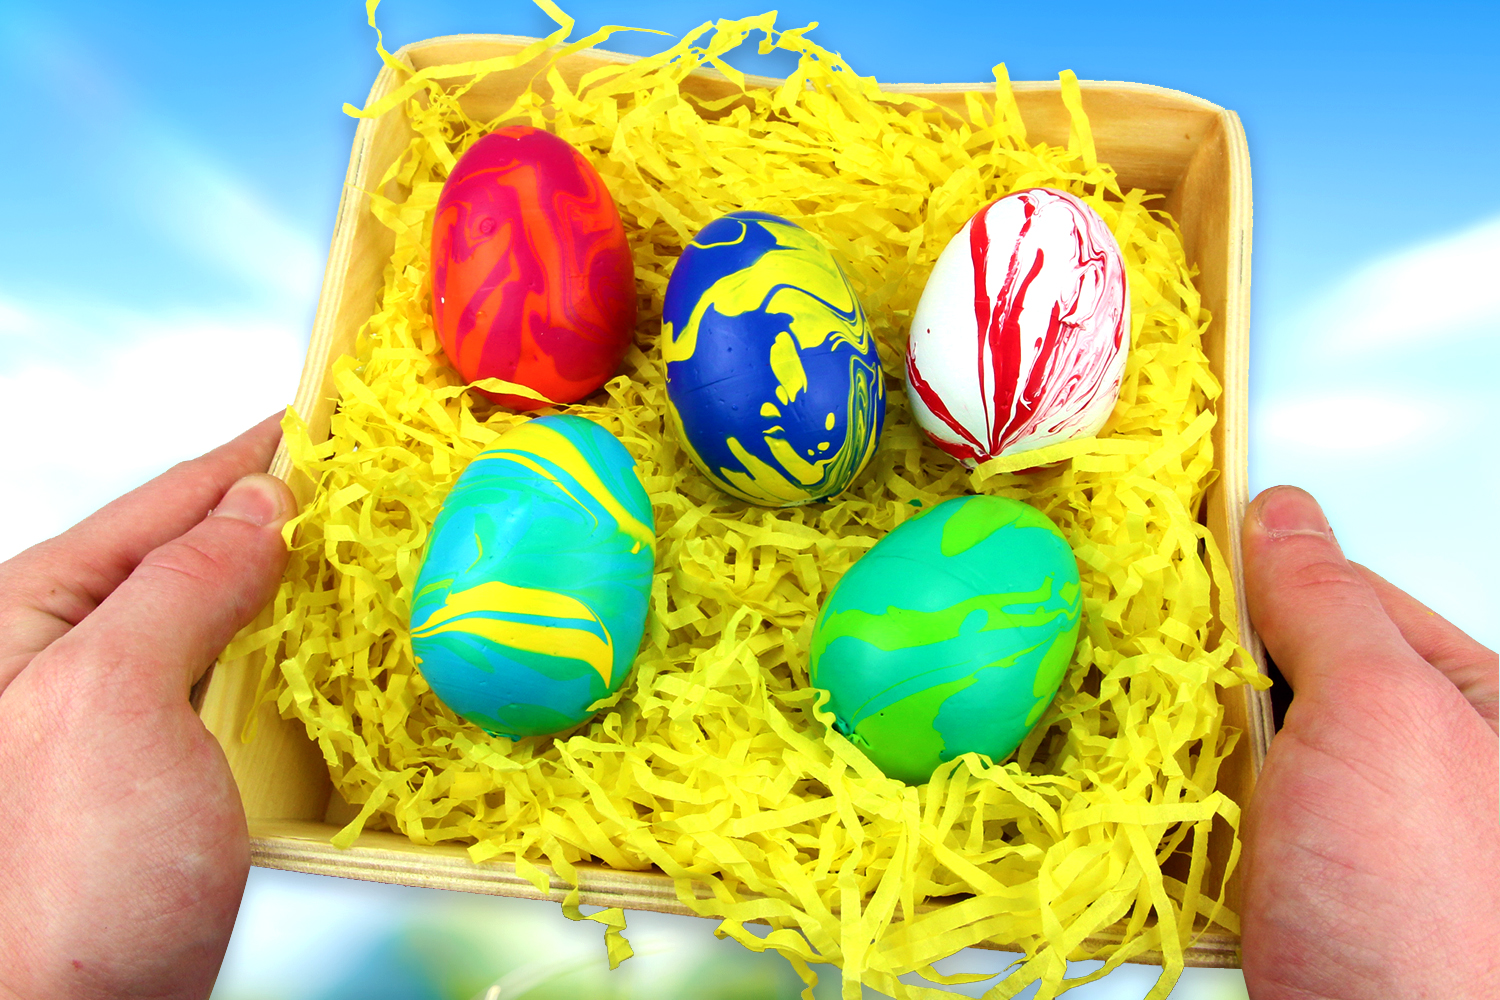 Idée DIY de Pâques pour les enfants : bricoler des œufs de Pâques colorés  collés sur des pinces à linge